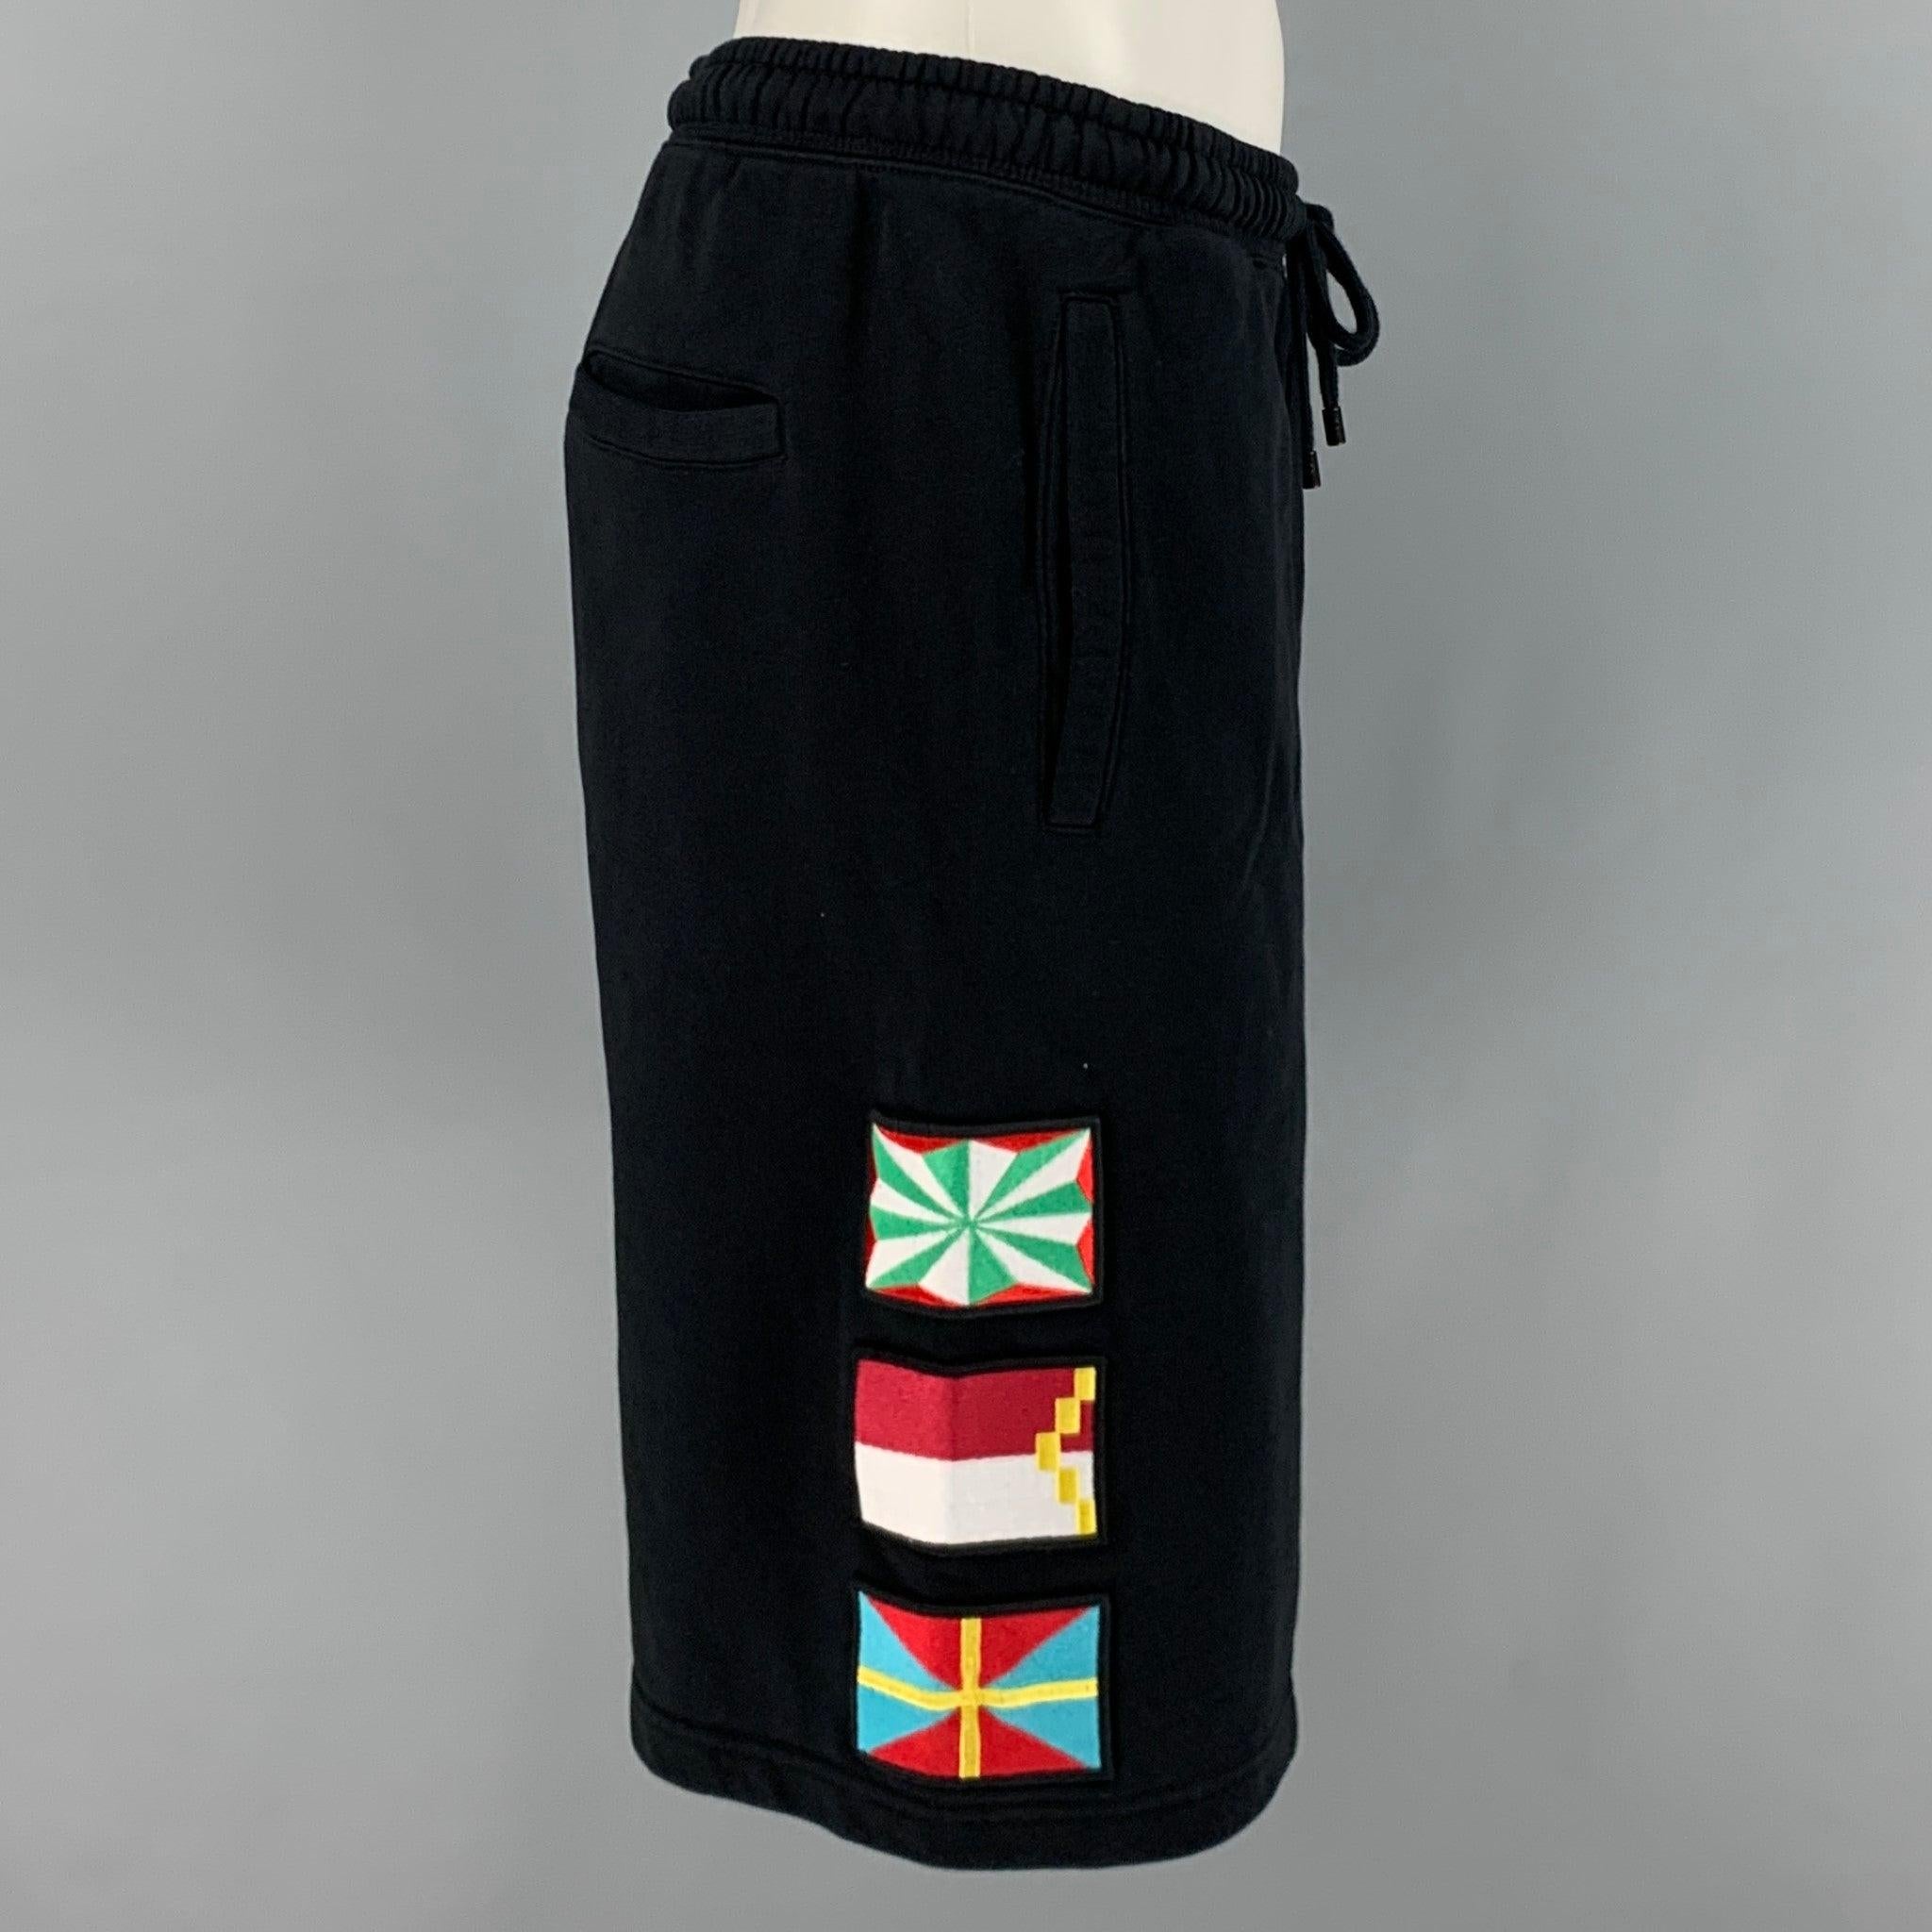 MARCELO BURLON Shorts
in einem
schwarzer Baumwollstoff mit mehrfarbigen Flaggenapplikationen, lockerer Passform und Kordelzug in der Taille. Dieser Artikel wurde geändert. Made in Portugal. sehr guter gebrauchter Zustand. Geringfügige Mängel.